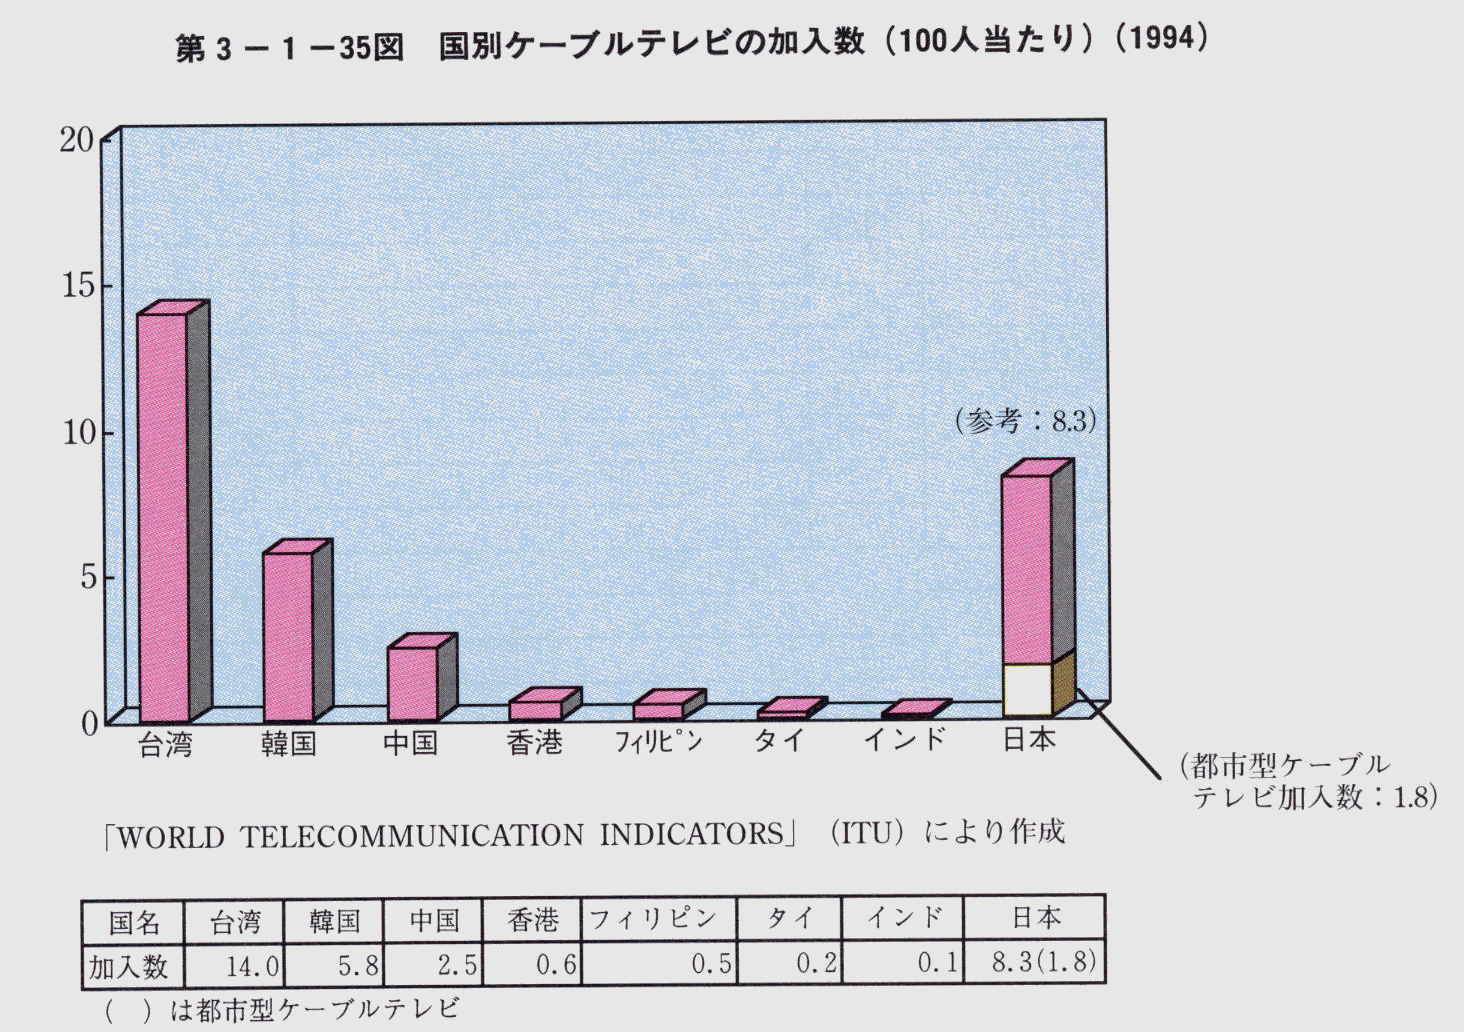 3-1-35} ʃP[uer̉(100l)(1994)